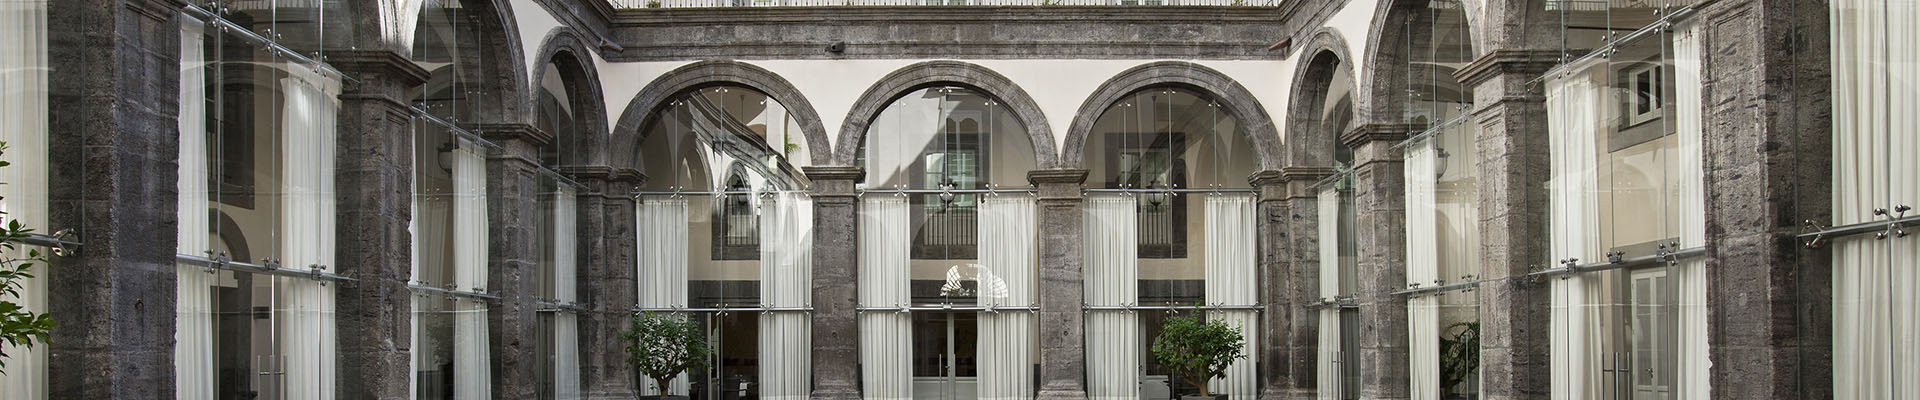 Palazzo Caracciolo – MGallery